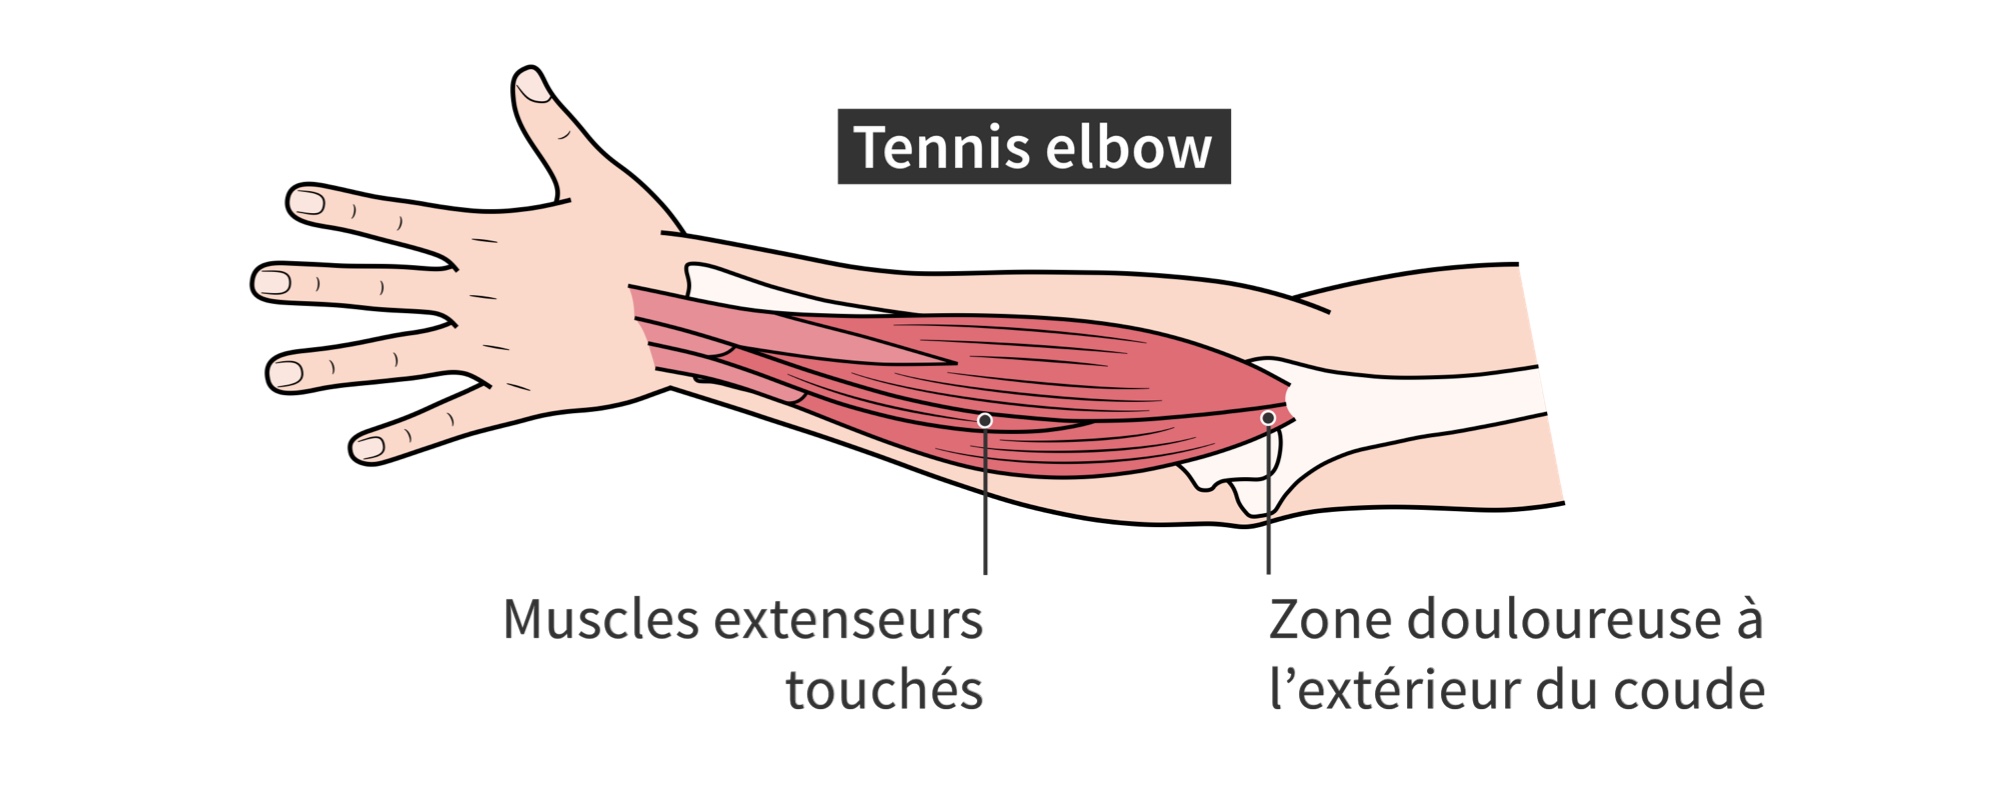 Muscles extenseurs des avant-bras